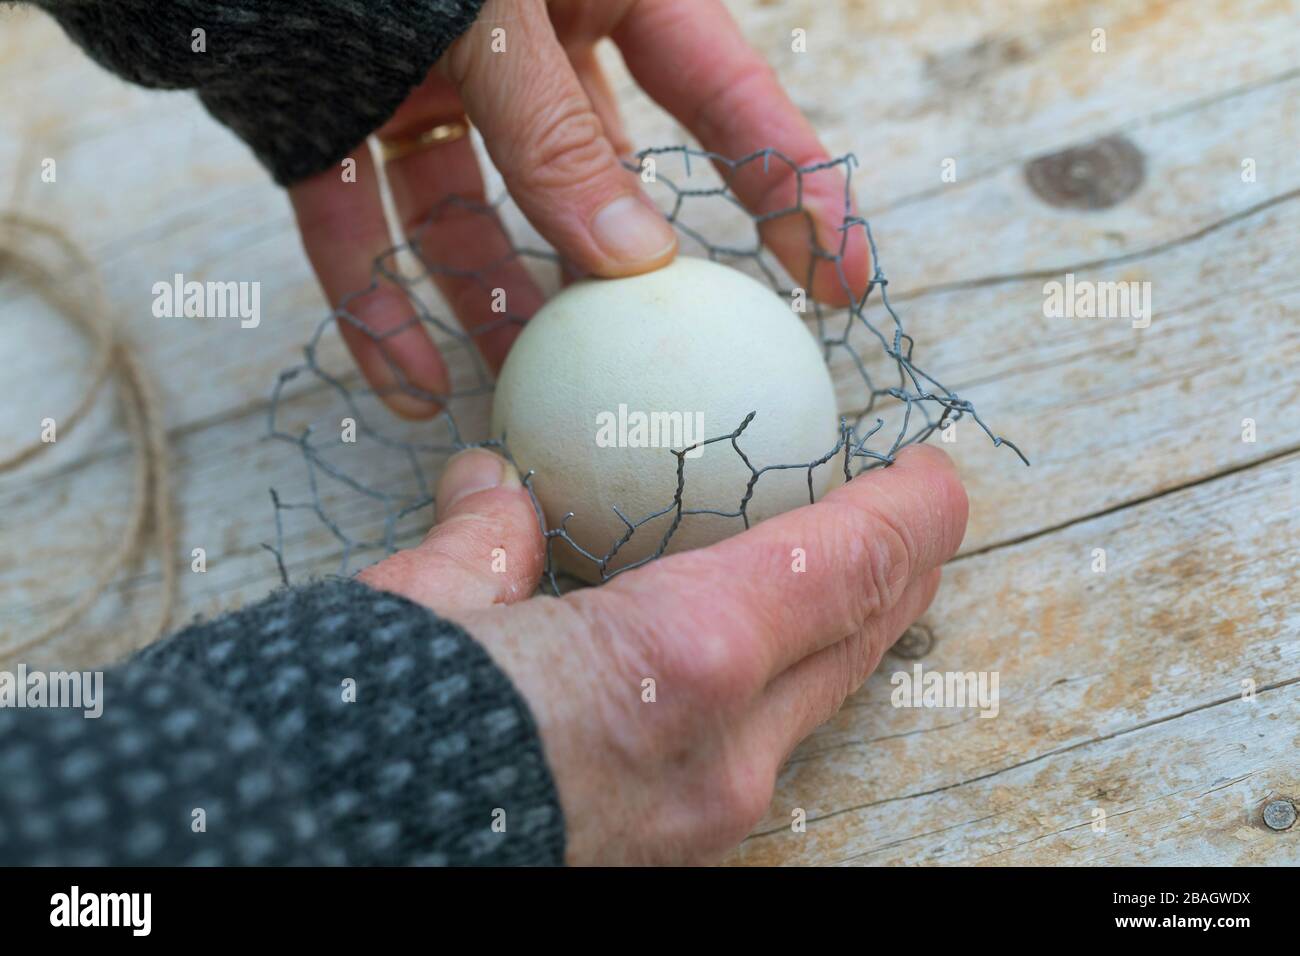 Fabrication d'un support pour boules de graisse, série photo 4/6, Allemagne Banque D'Images